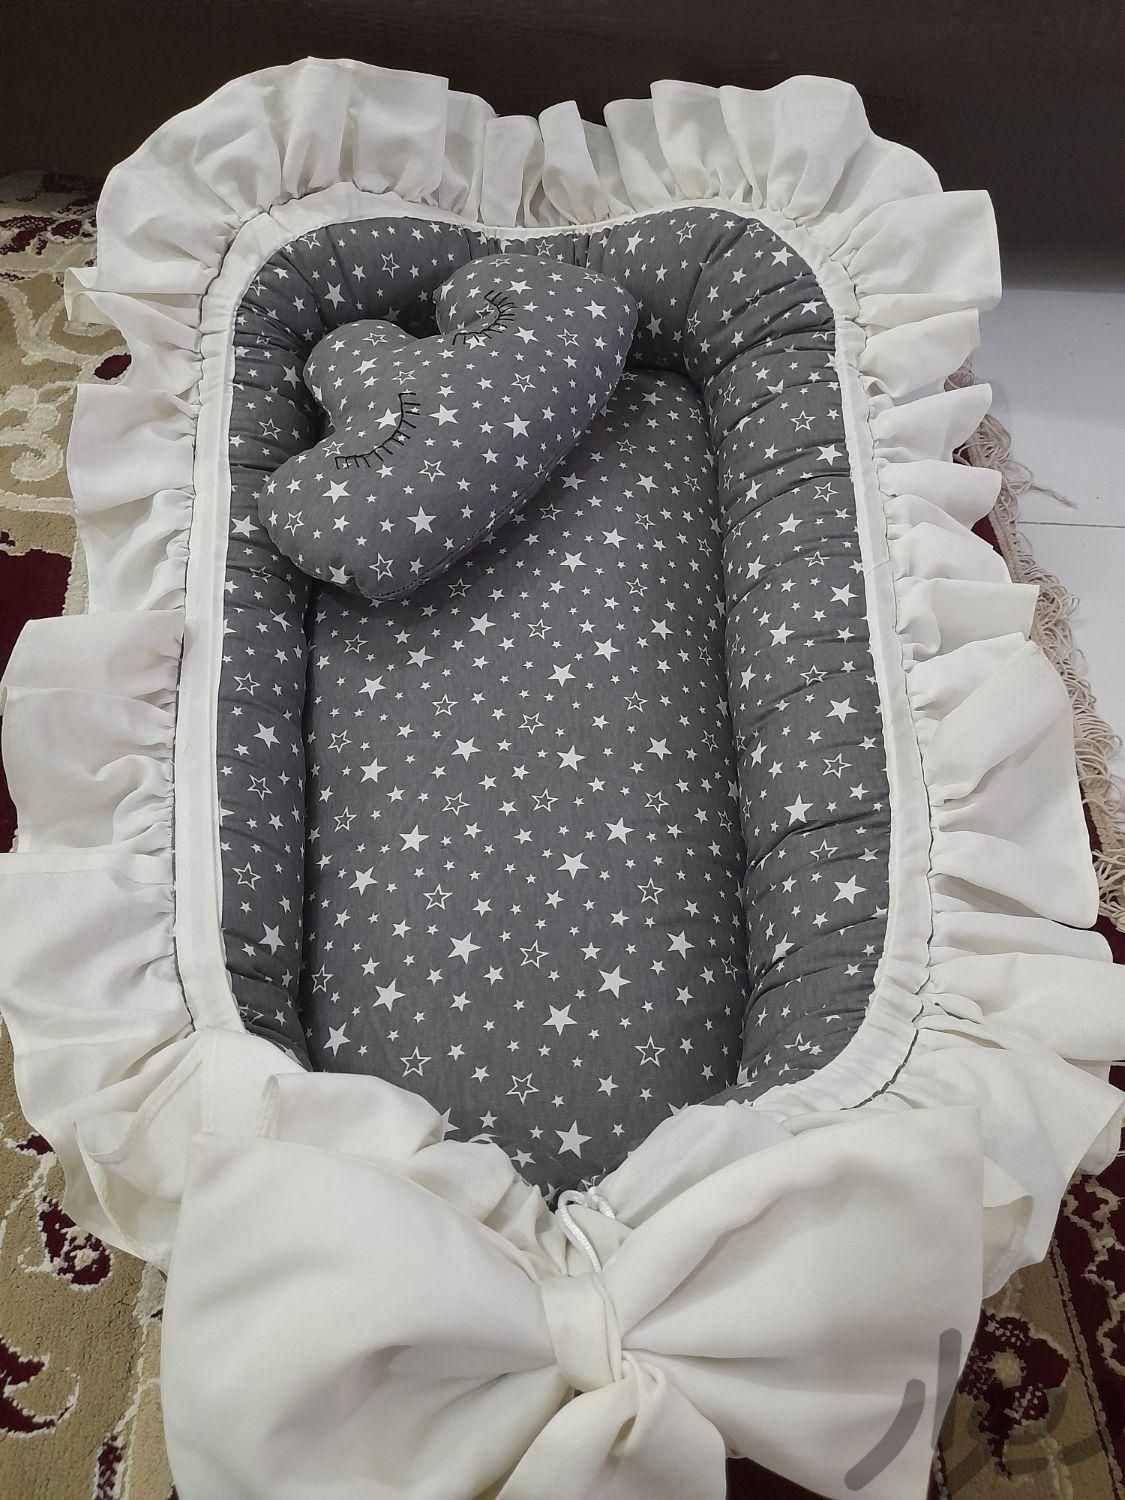 سرویس خواب نوزاد کامل|اسباب و اثاث بچه|مشهد, شهرک شهید رجایی|دیوار